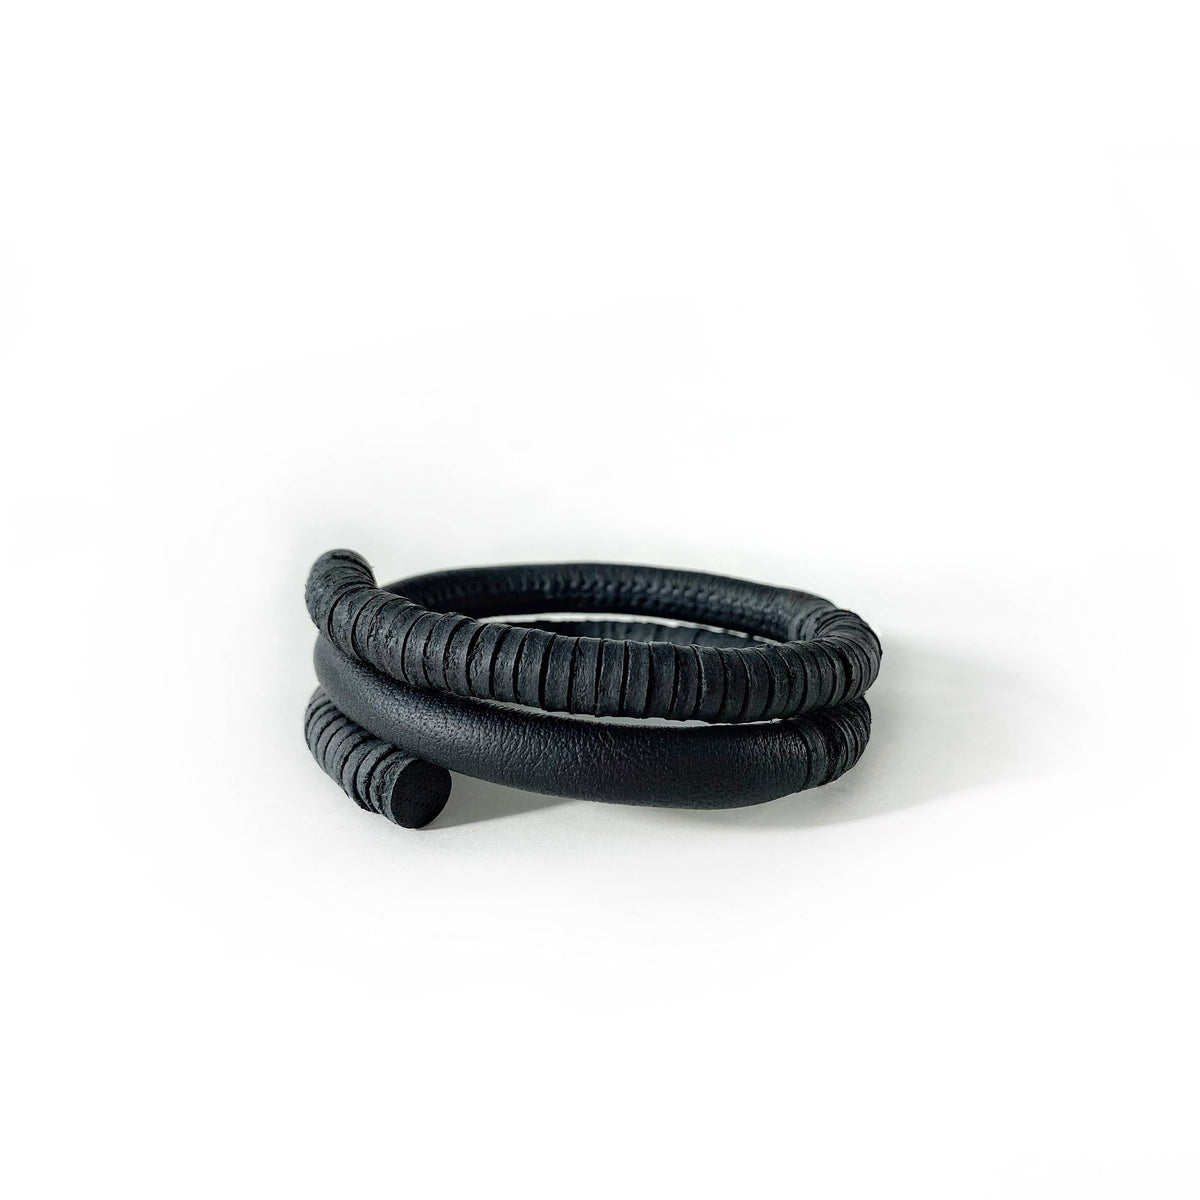 B006 unisex leather bracelet